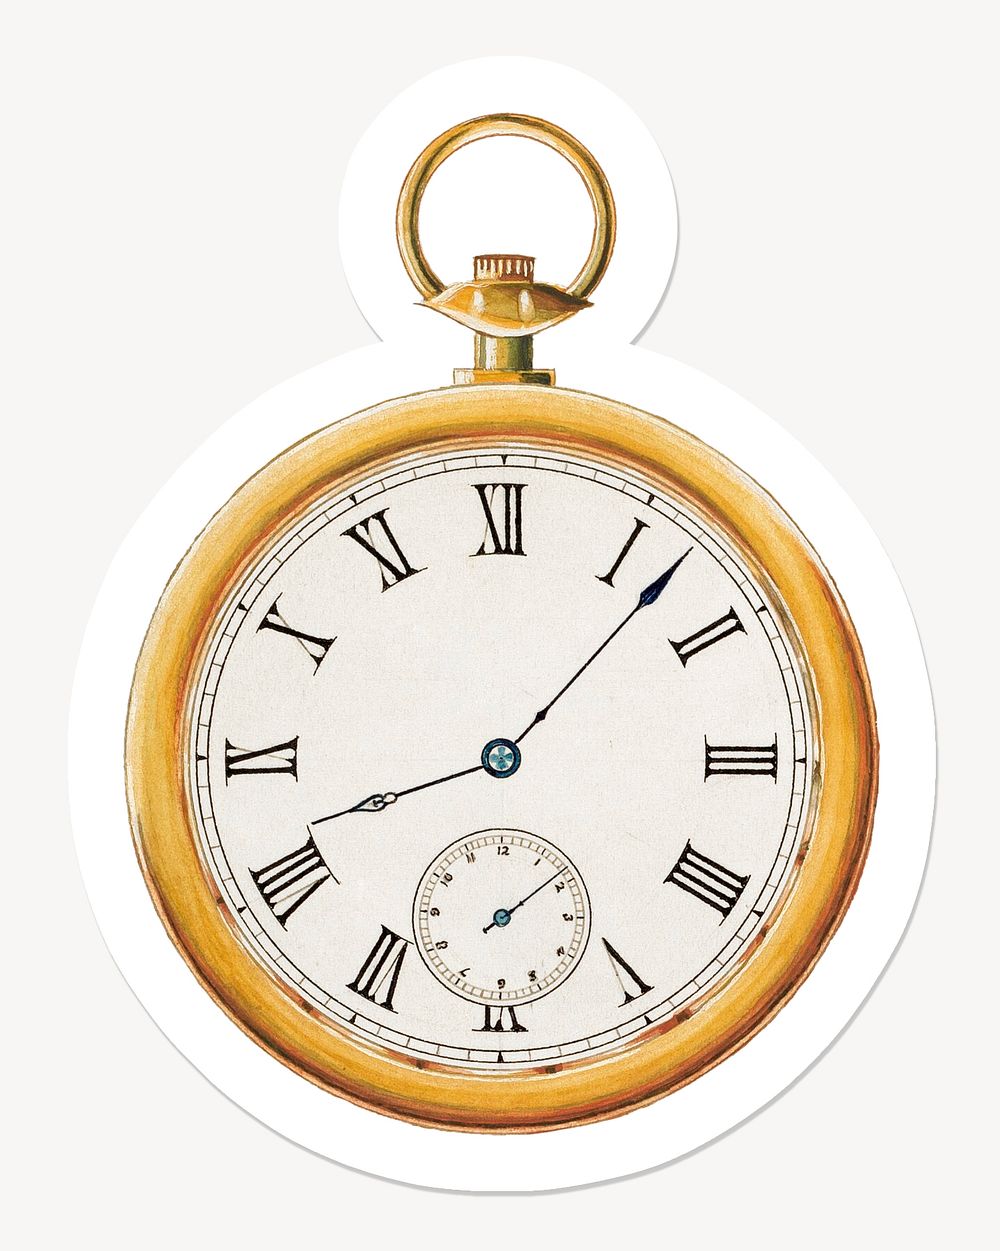 Vintage golden watch, Roman numerals design